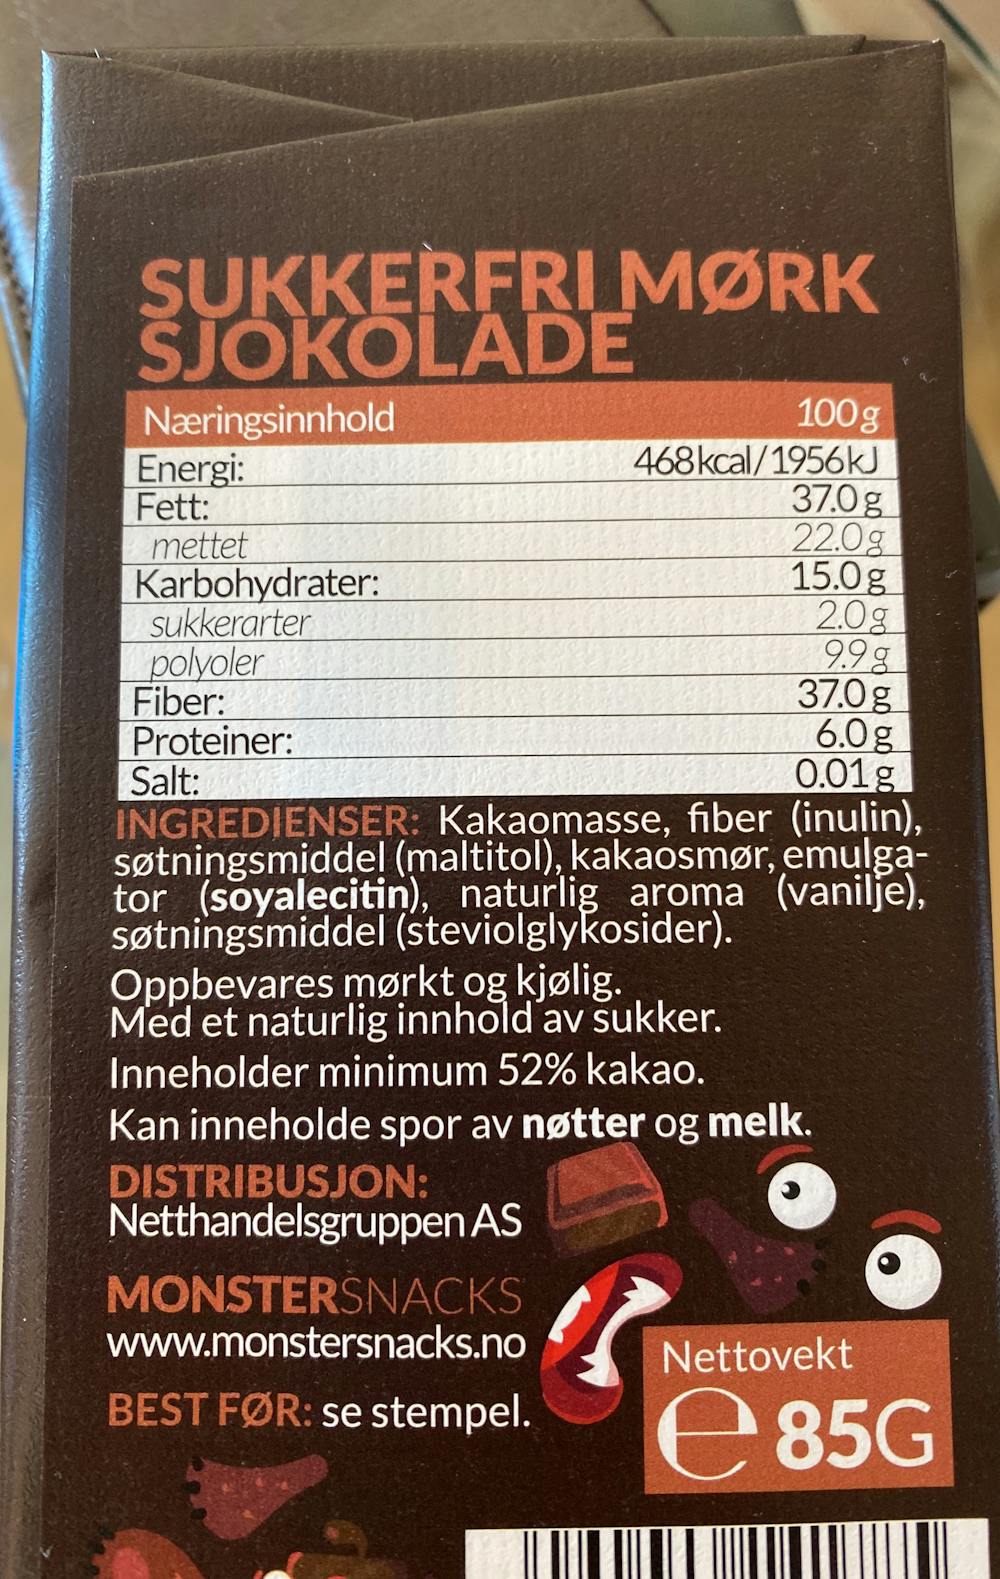 Ingredienslisten til Monster snacks Monster sukkerfri sjokolade